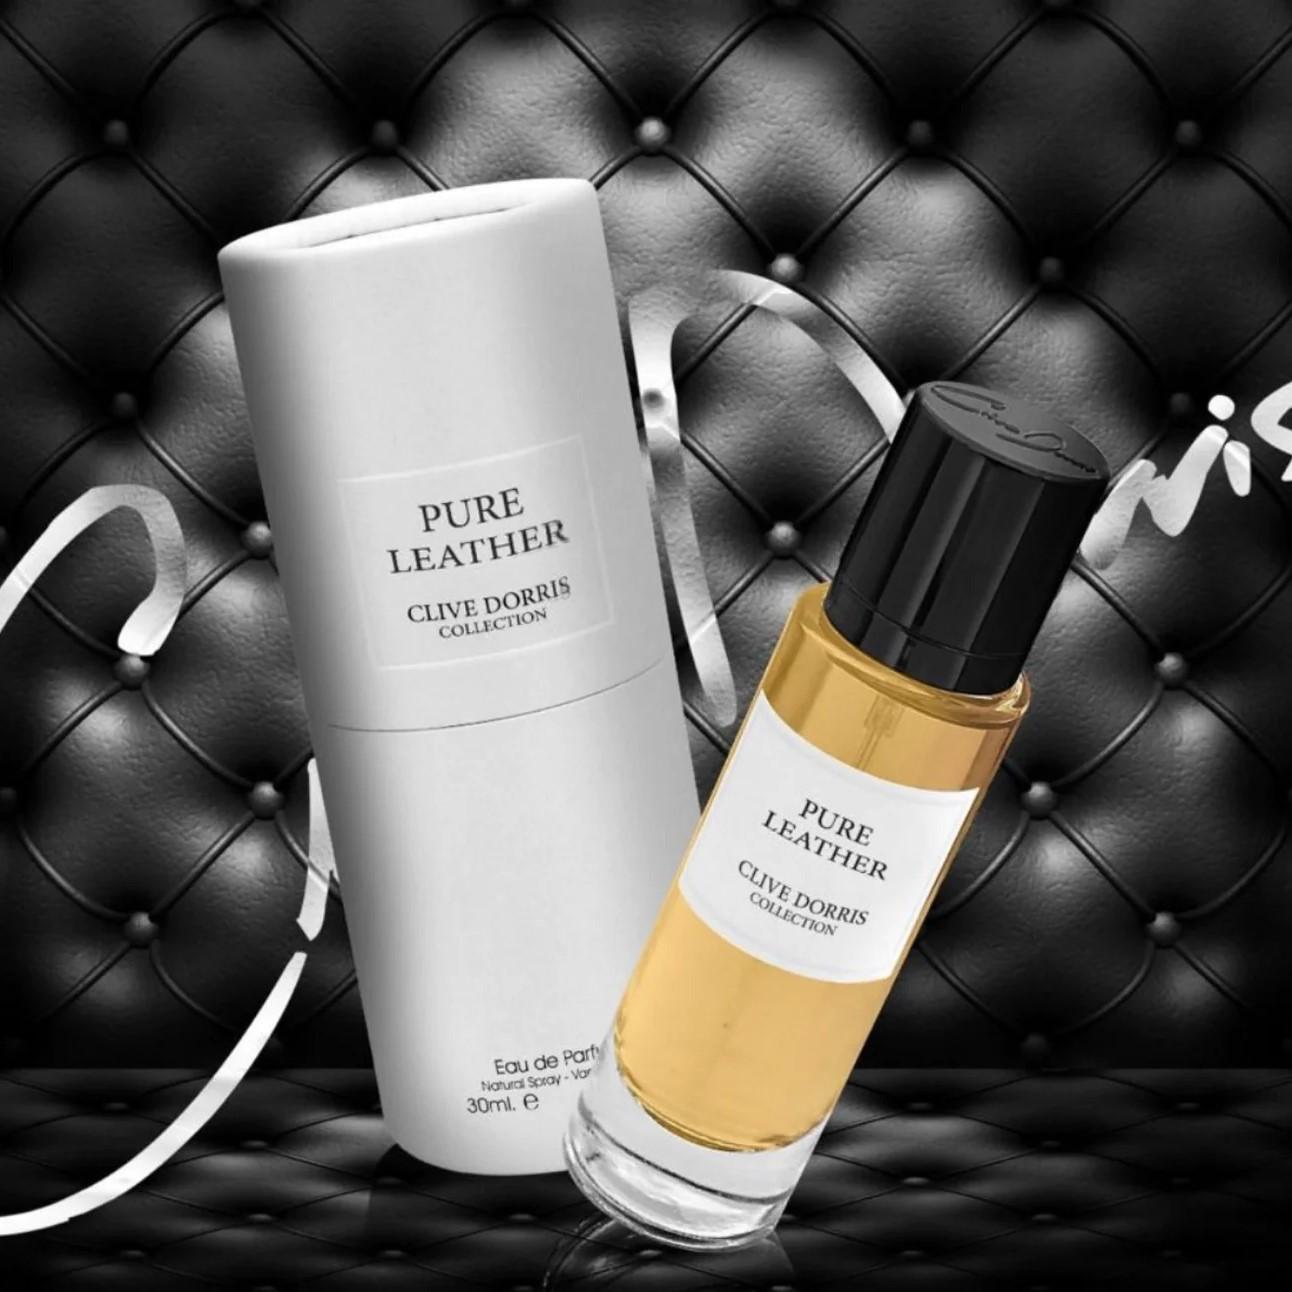 Pure Leather (Clive Dorris Collection) 30Ml Travel Size Perfume Eau De Parfum By Fragrance World 